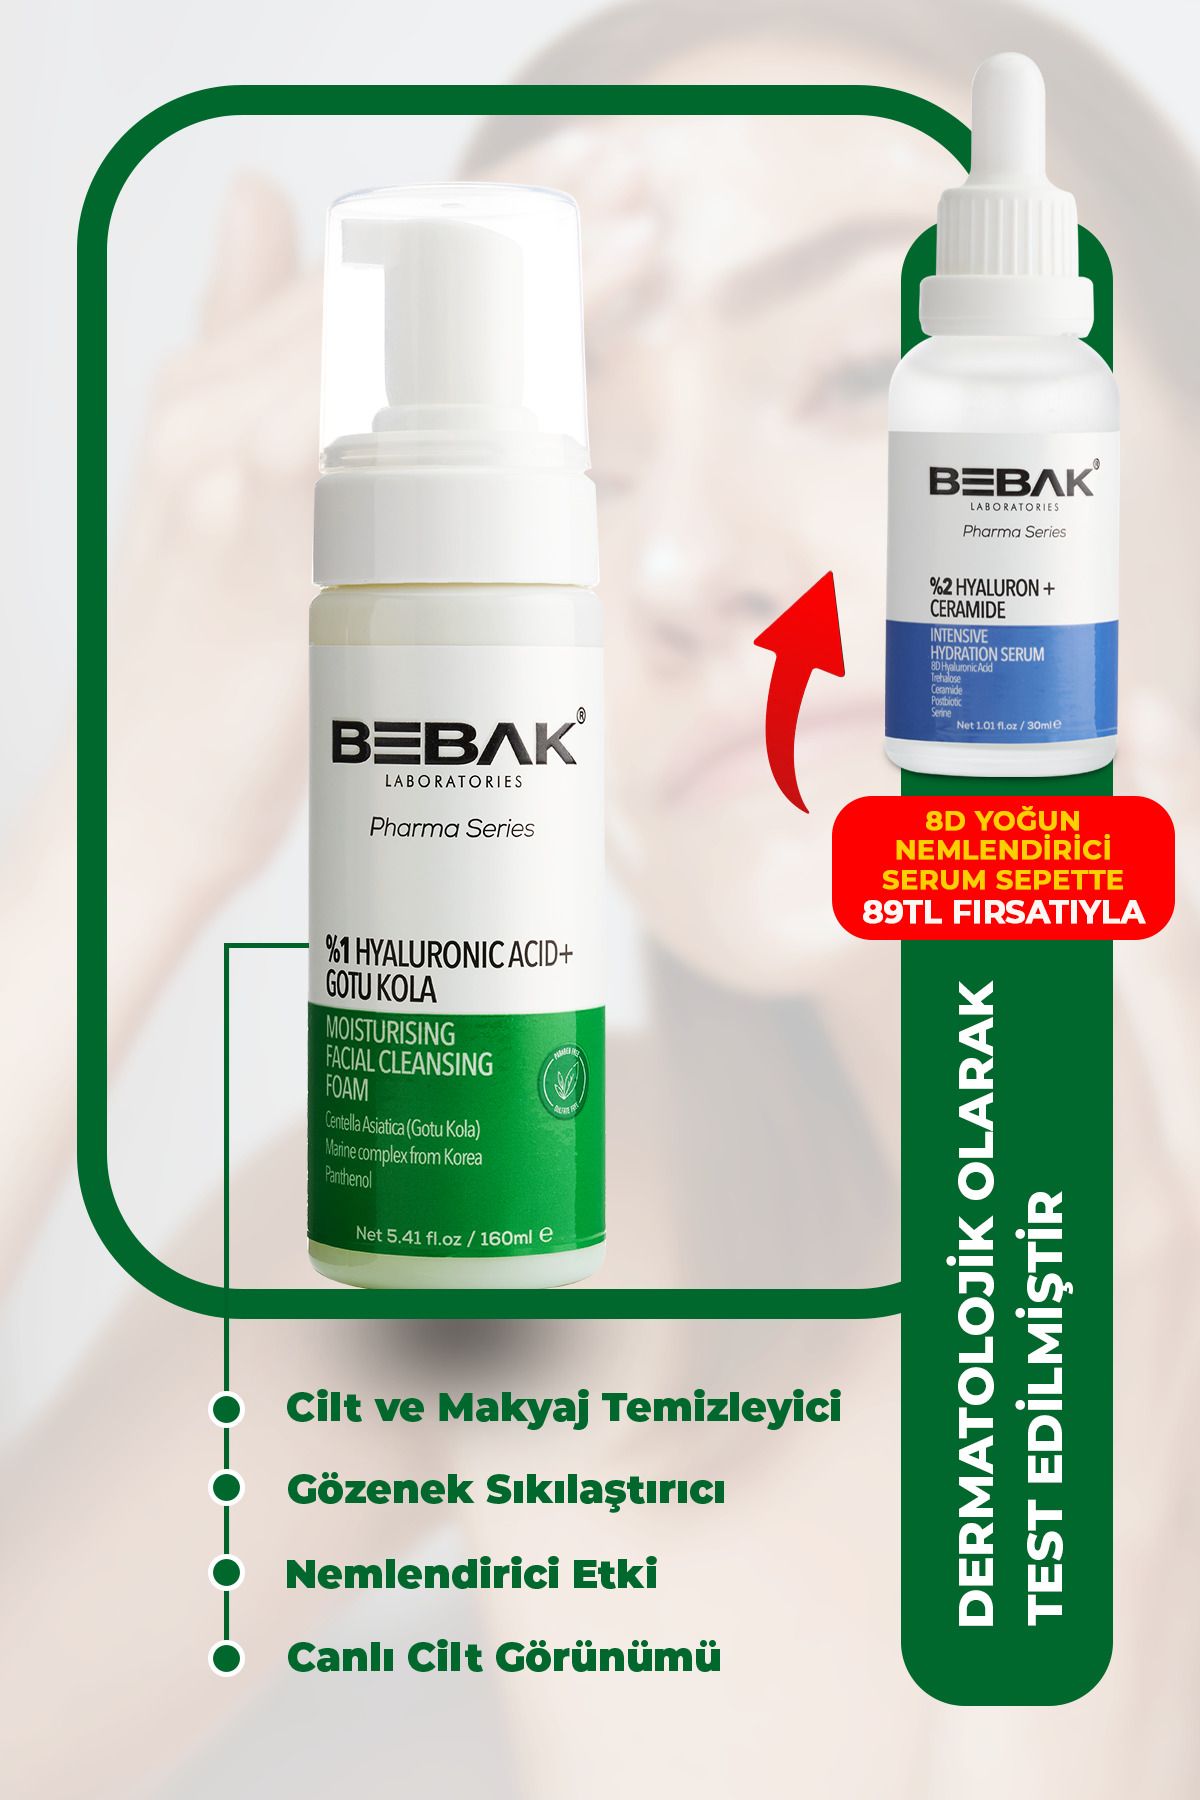 Bebak Pharma Cilt Ve Makyaj Temizleyici, Gözenek Sıkılaştırıcı Yüz Temizleme Köpüğü 160ml